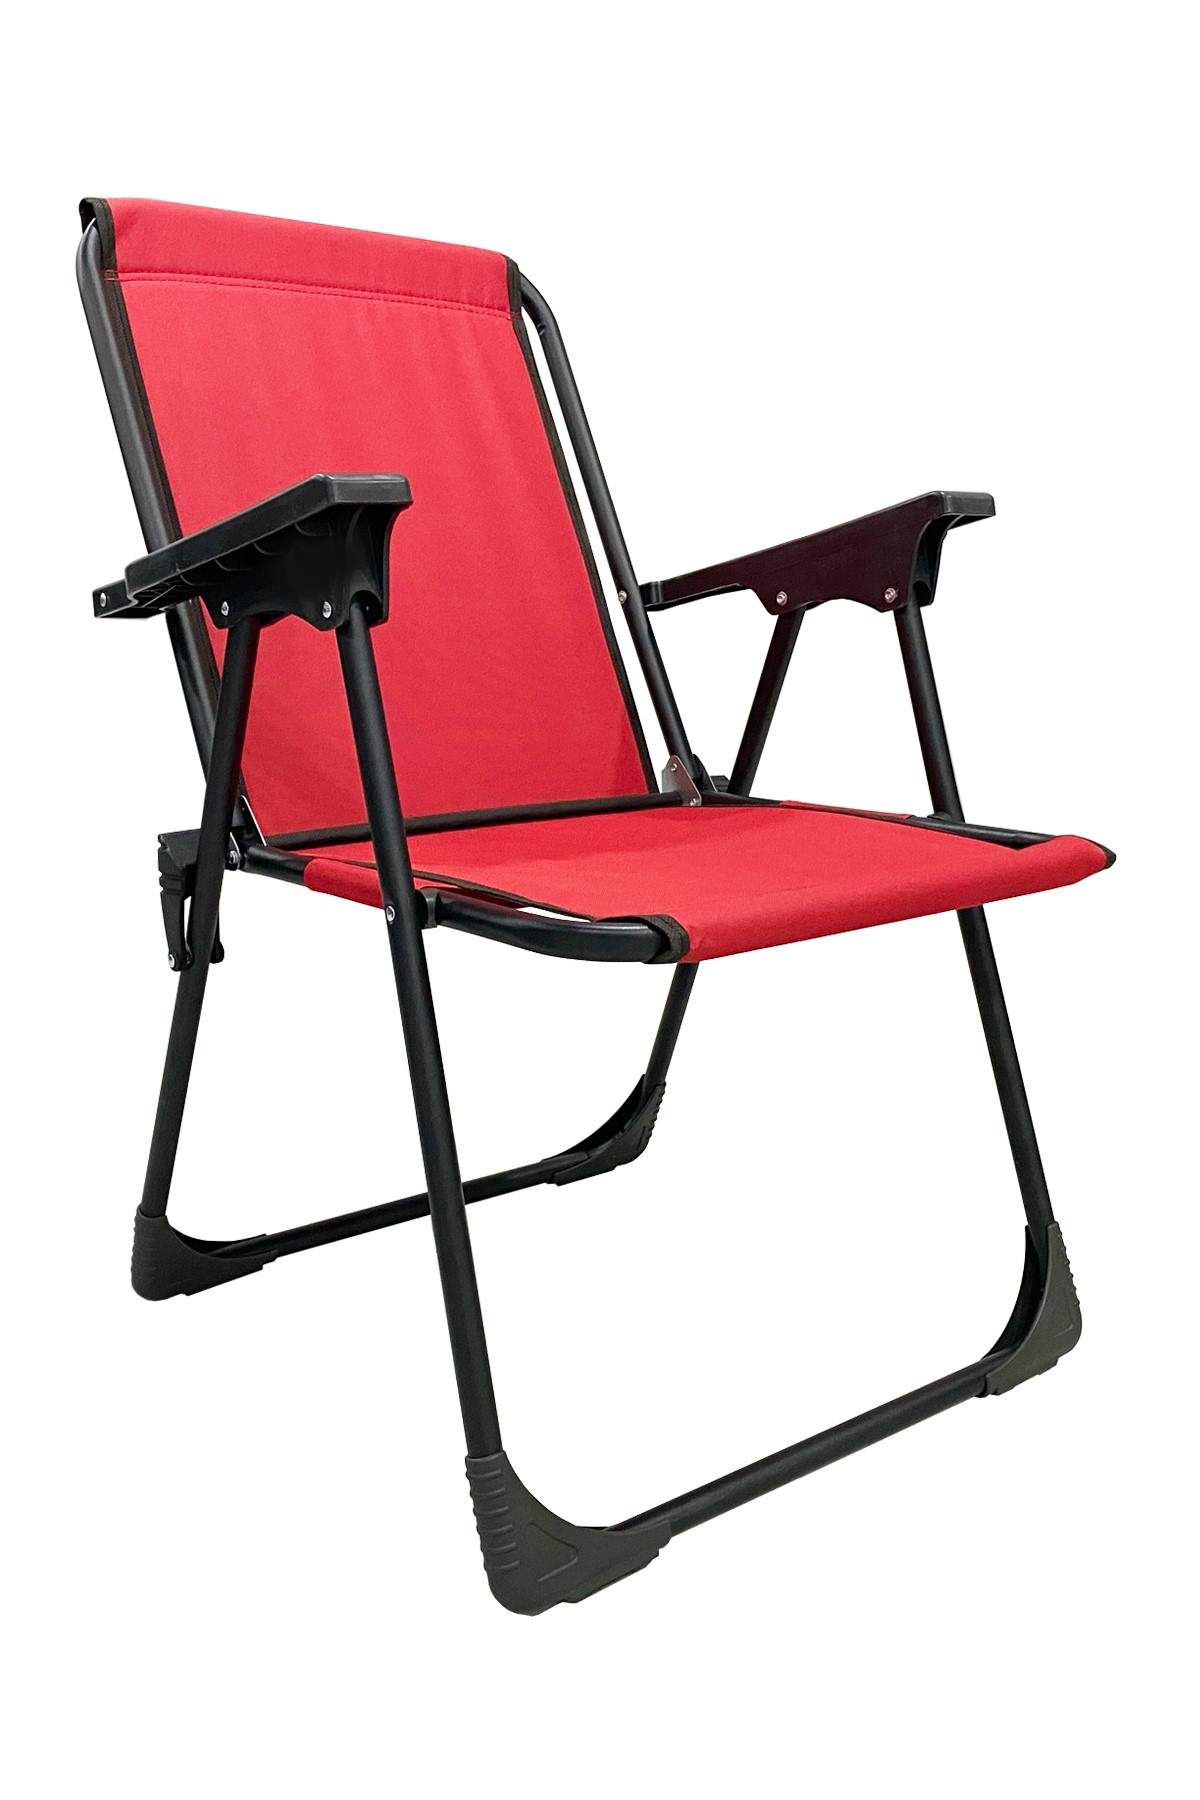 Katlanır Kamp Sandalyesi Piknik Koltuğu Plaj Şezlongu Kırmızı